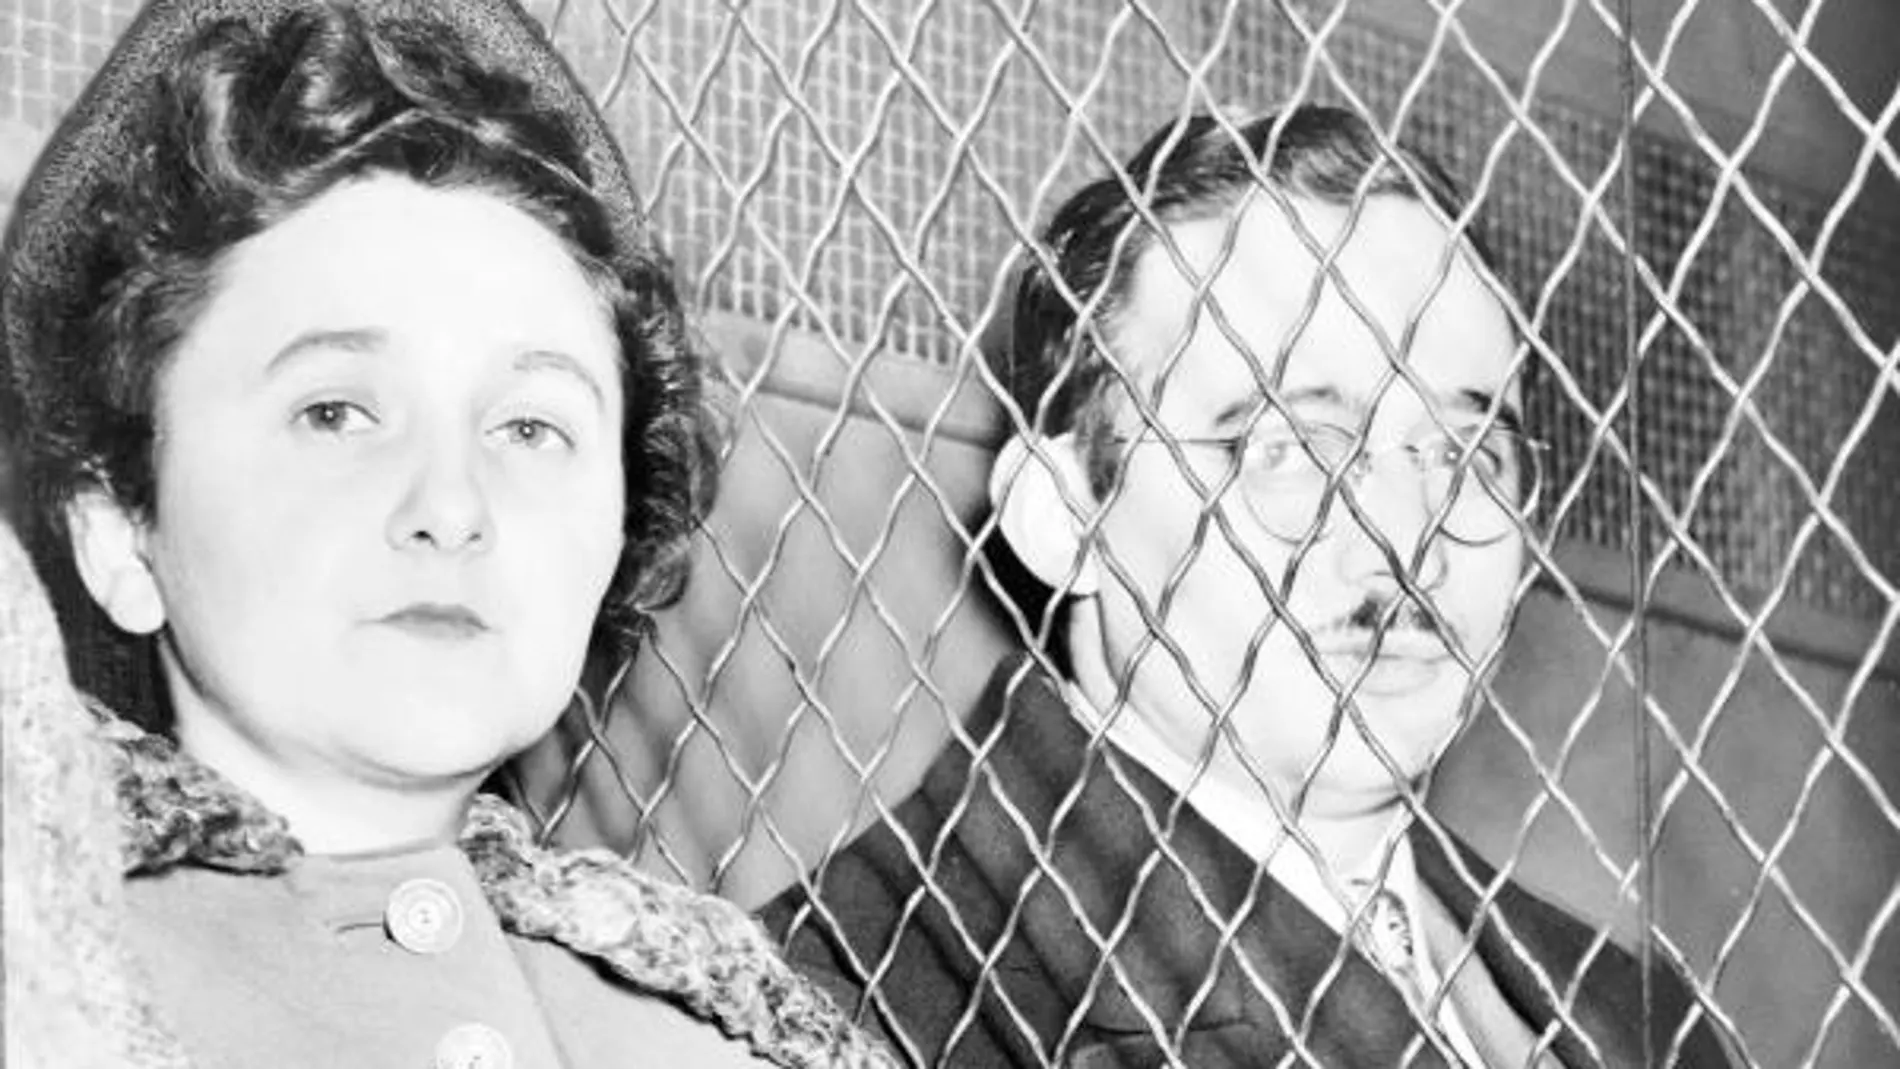 Julius Rosenberg era ingeniero electrónico y Ethel, cantante. Murieron en la silla eléctrica en 1953.